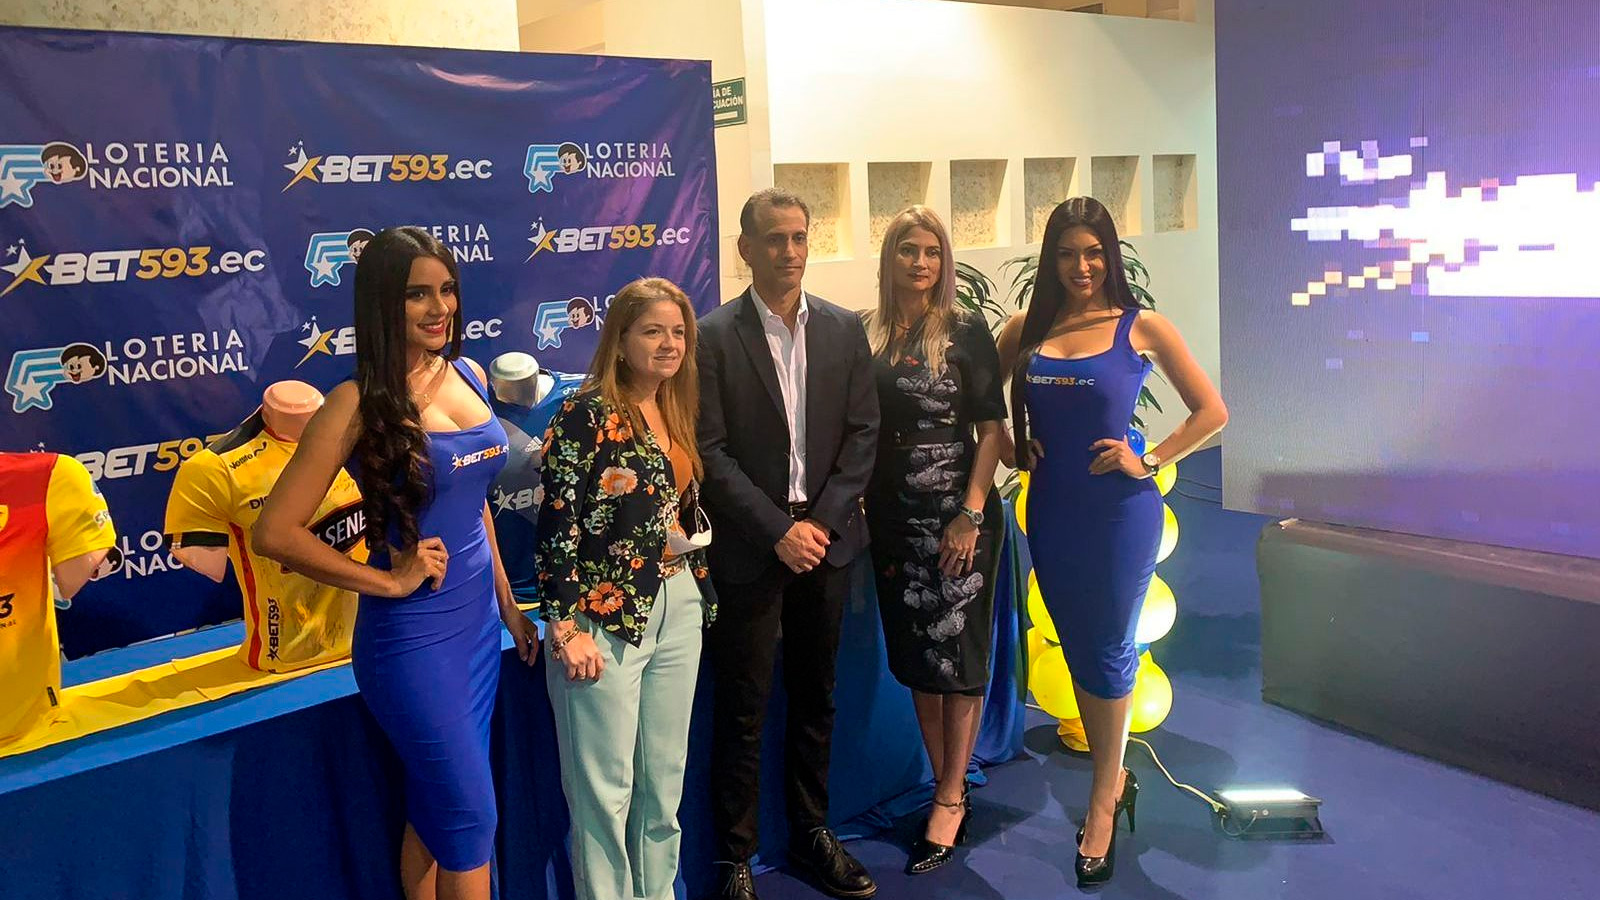 La Lotería de Ecuador lanza nueva app y web de apuestas deportivas bajo su marca Bet593